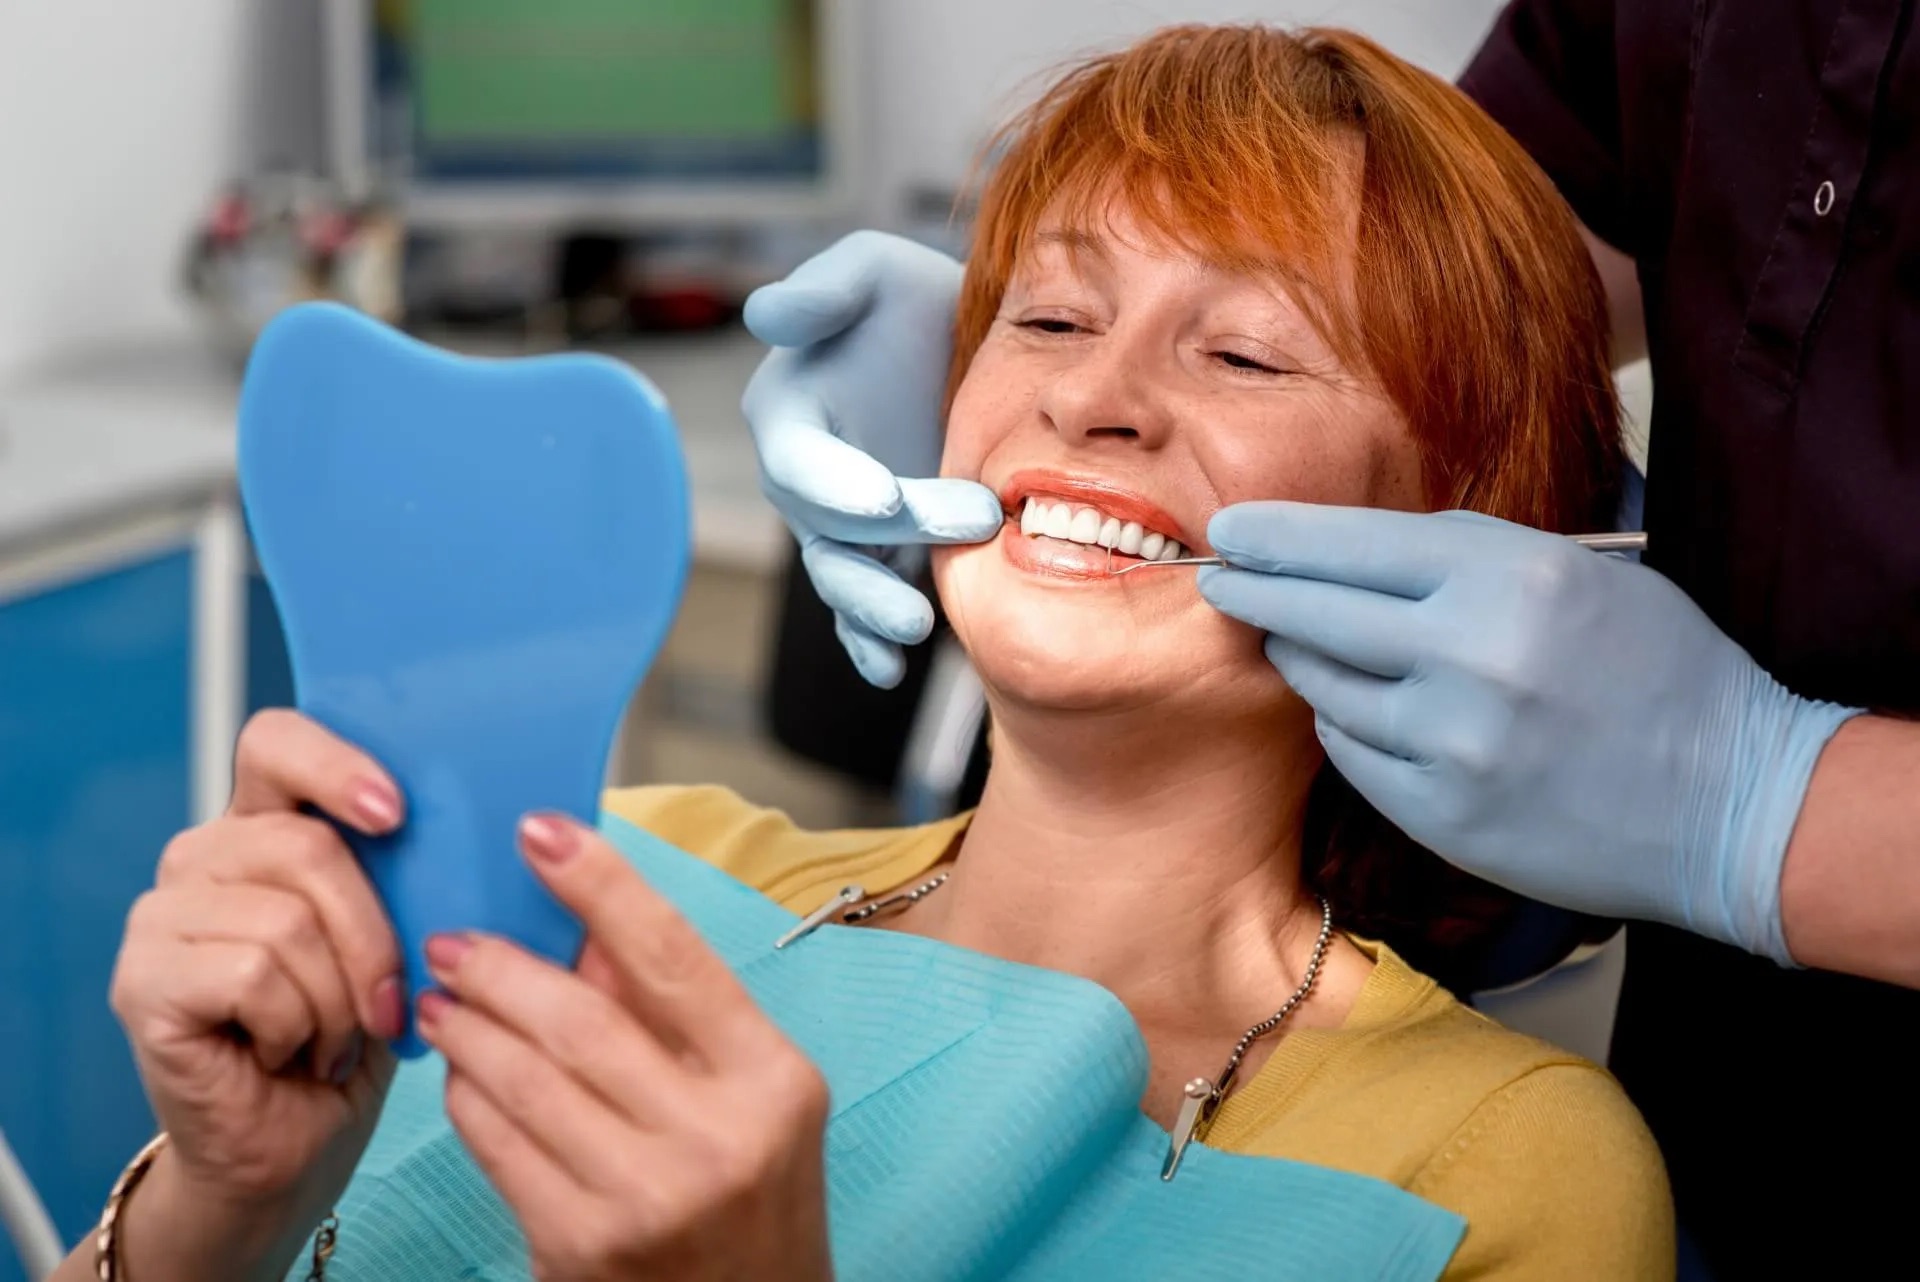 How do dental technicians choose your teeth